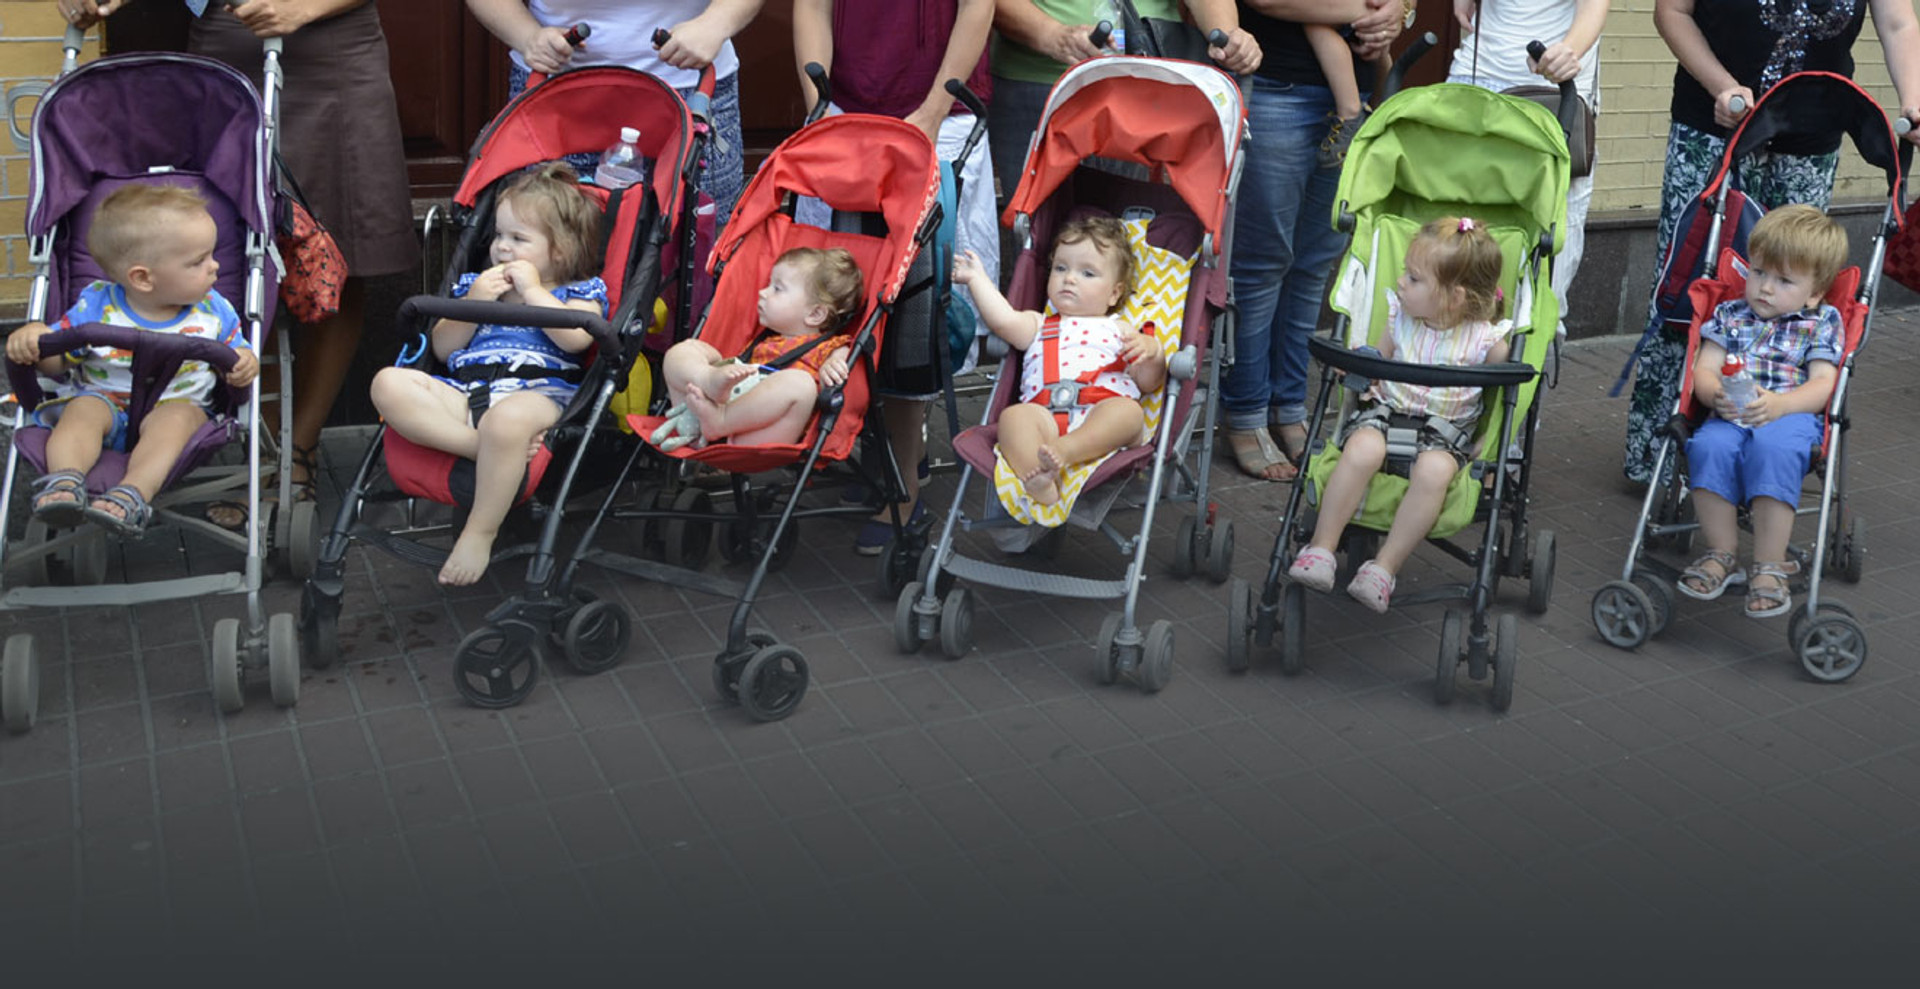 Візочкові ралі, або Як мами вимагають доступності в Україні